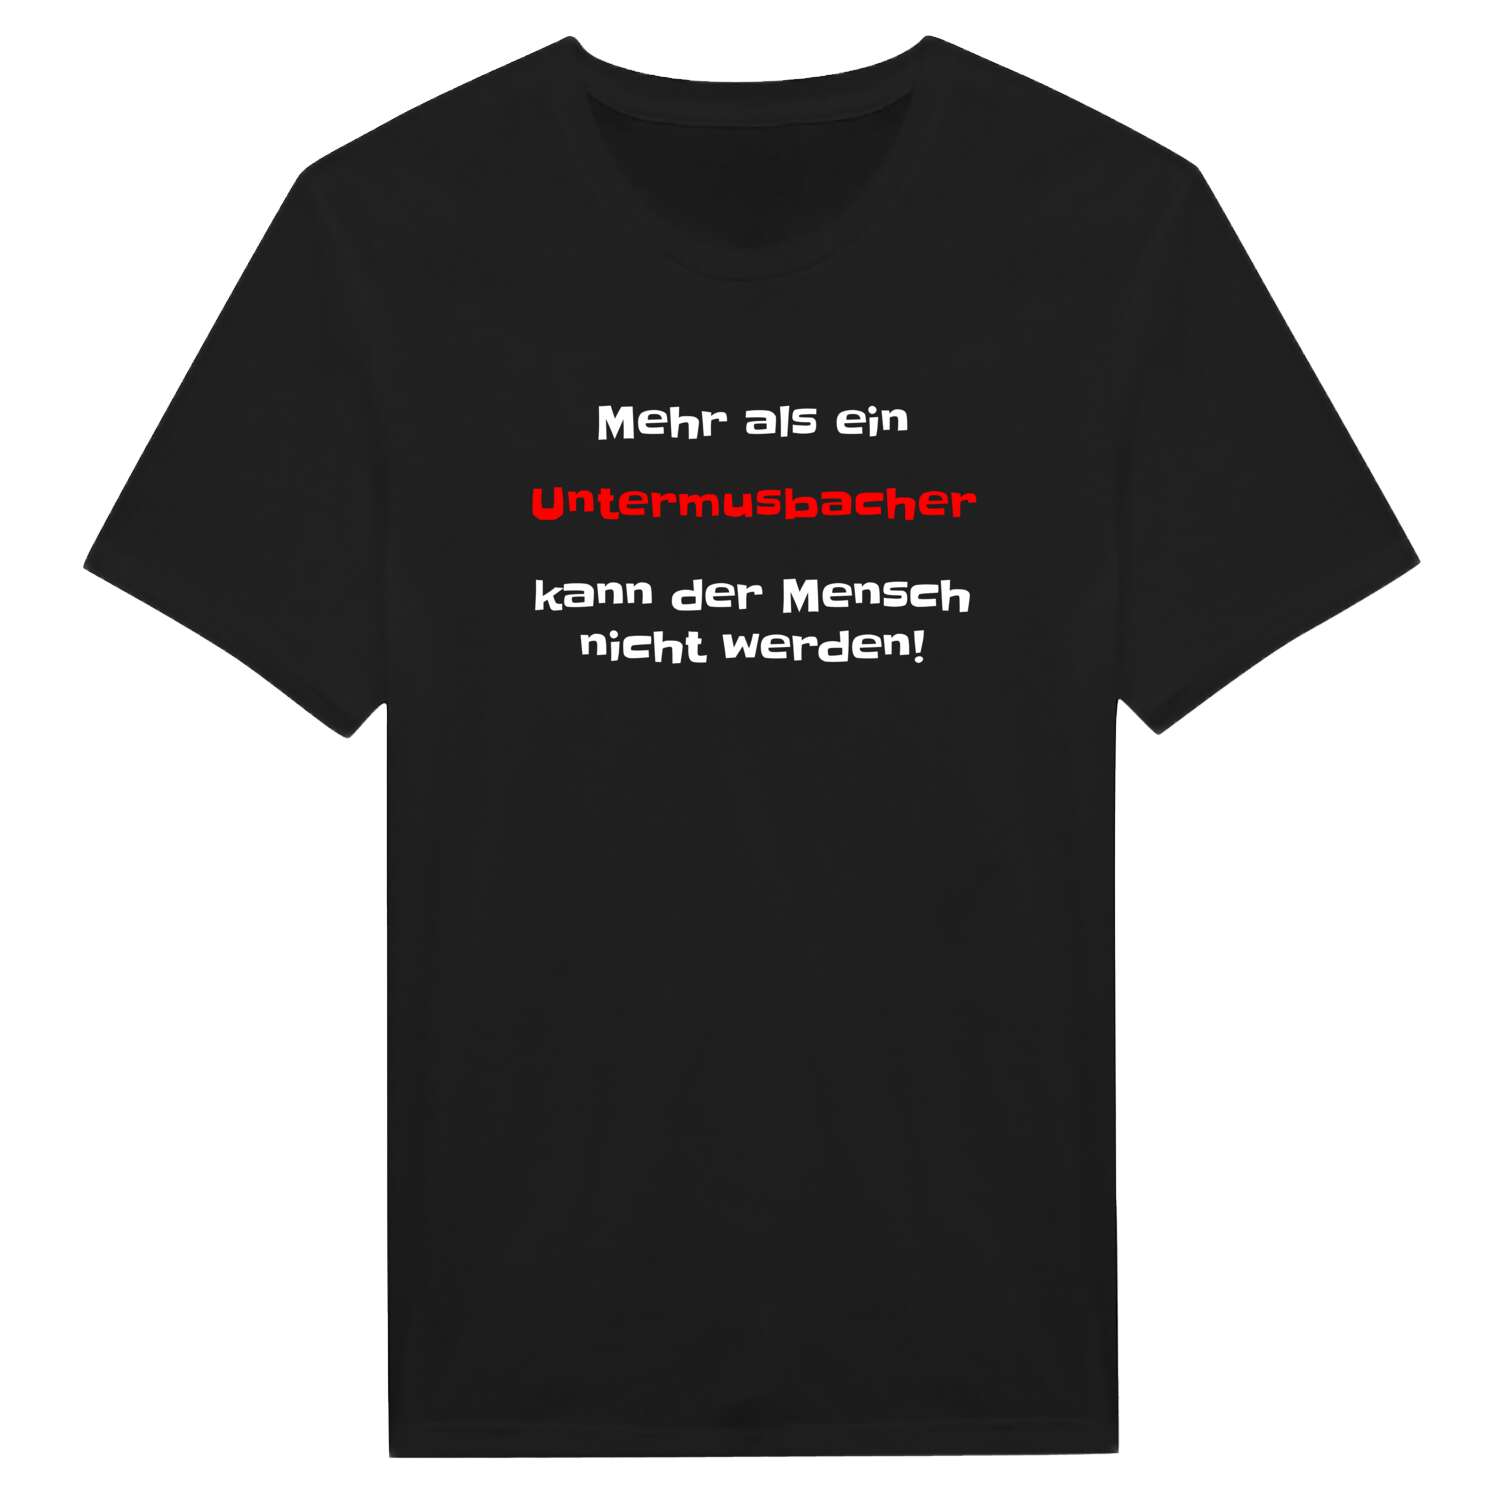 Untermusbach T-Shirt »Mehr als ein«